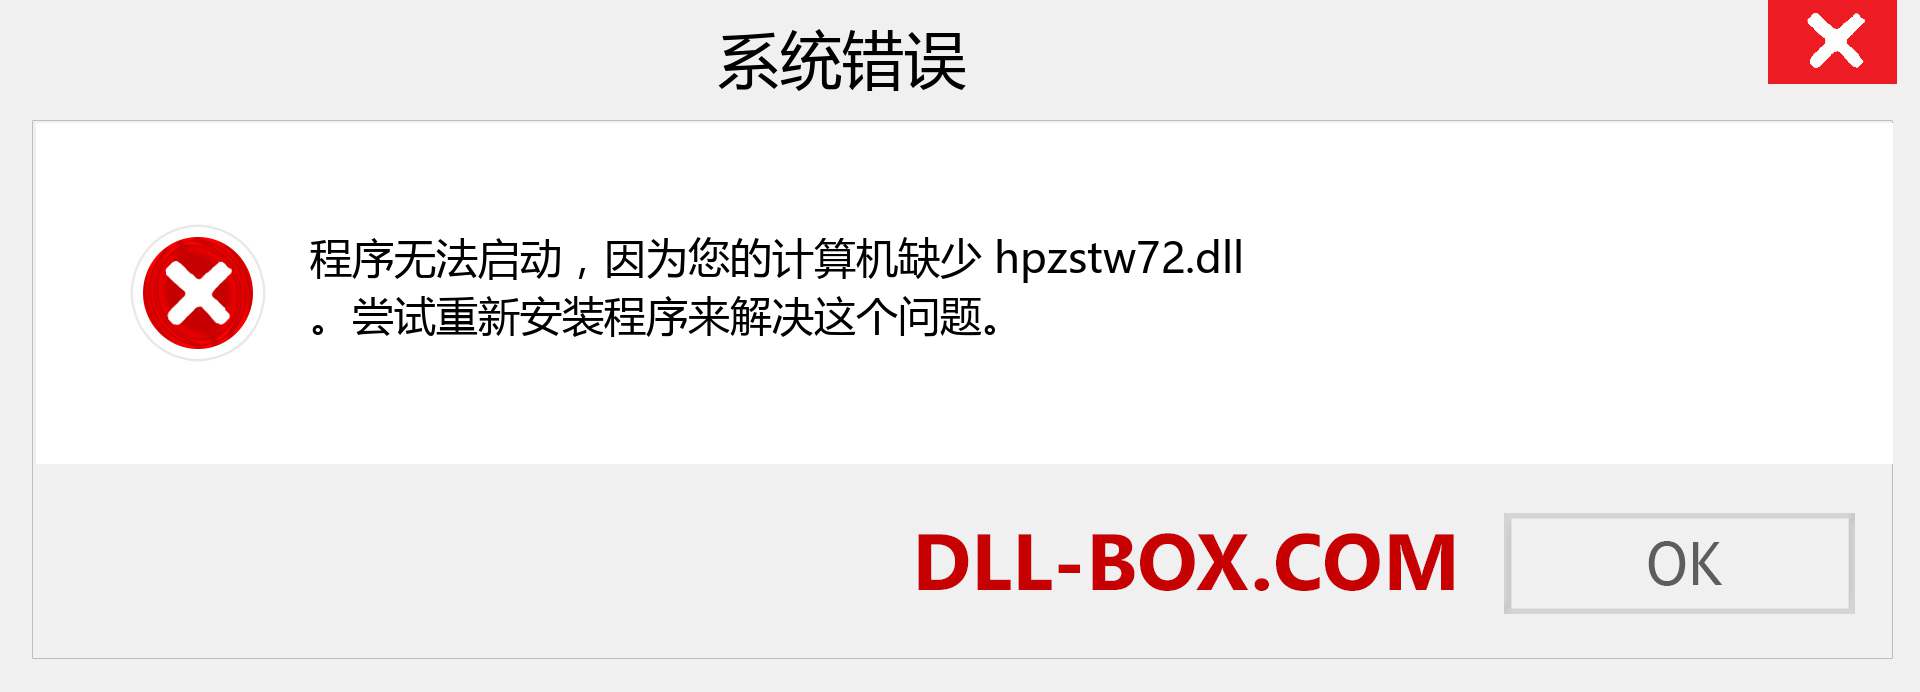 hpzstw72.dll 文件丢失？。 适用于 Windows 7、8、10 的下载 - 修复 Windows、照片、图像上的 hpzstw72 dll 丢失错误